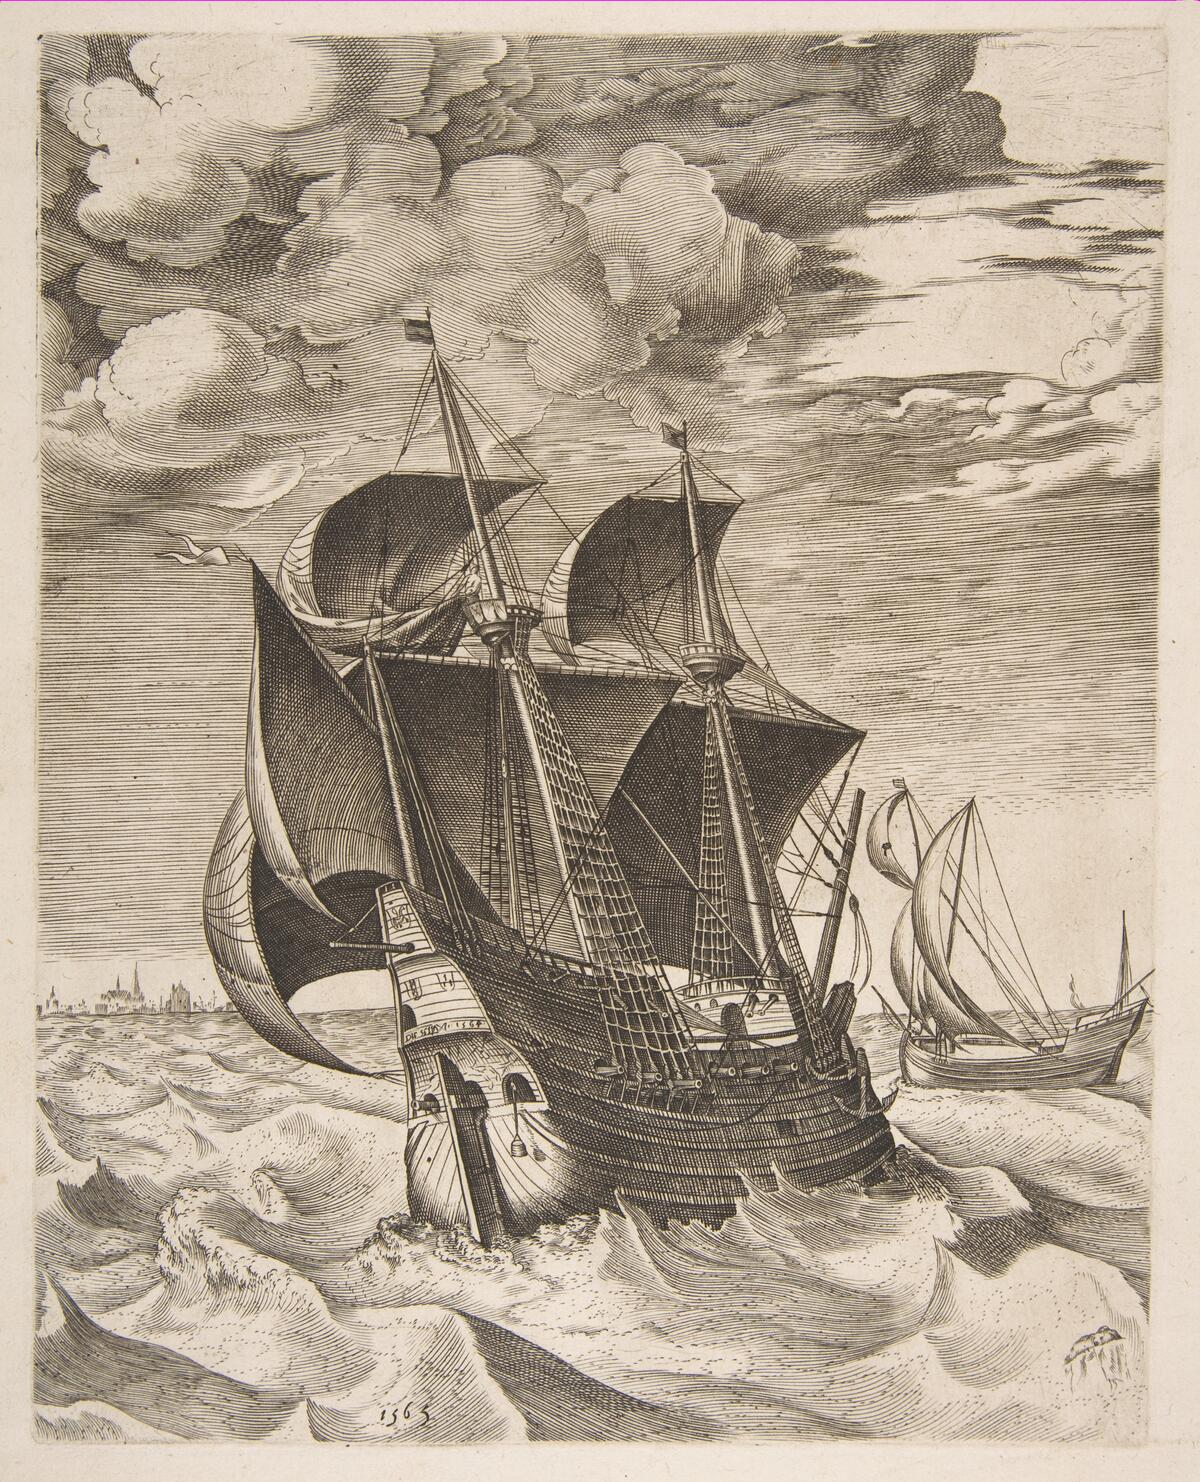 Piirroksessa on kuvattu takaa päin purjealus tuulisella merellä.